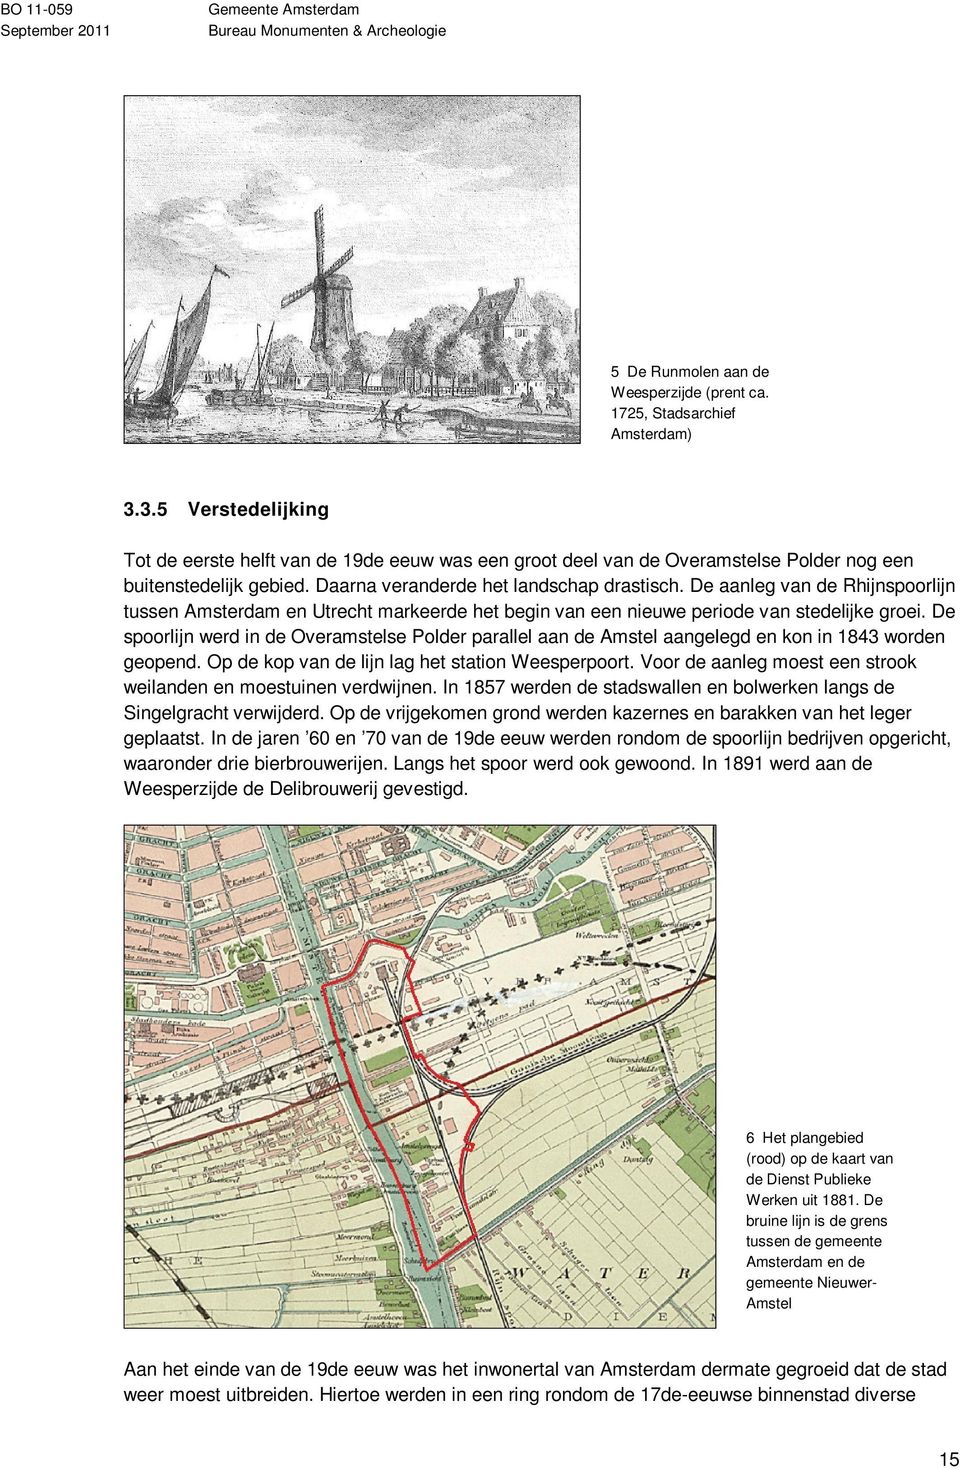 De aanleg van de Rhijnspoorlijn tussen Amsterdam en Utrecht markeerde het begin van een nieuwe periode van stedelijke groei.